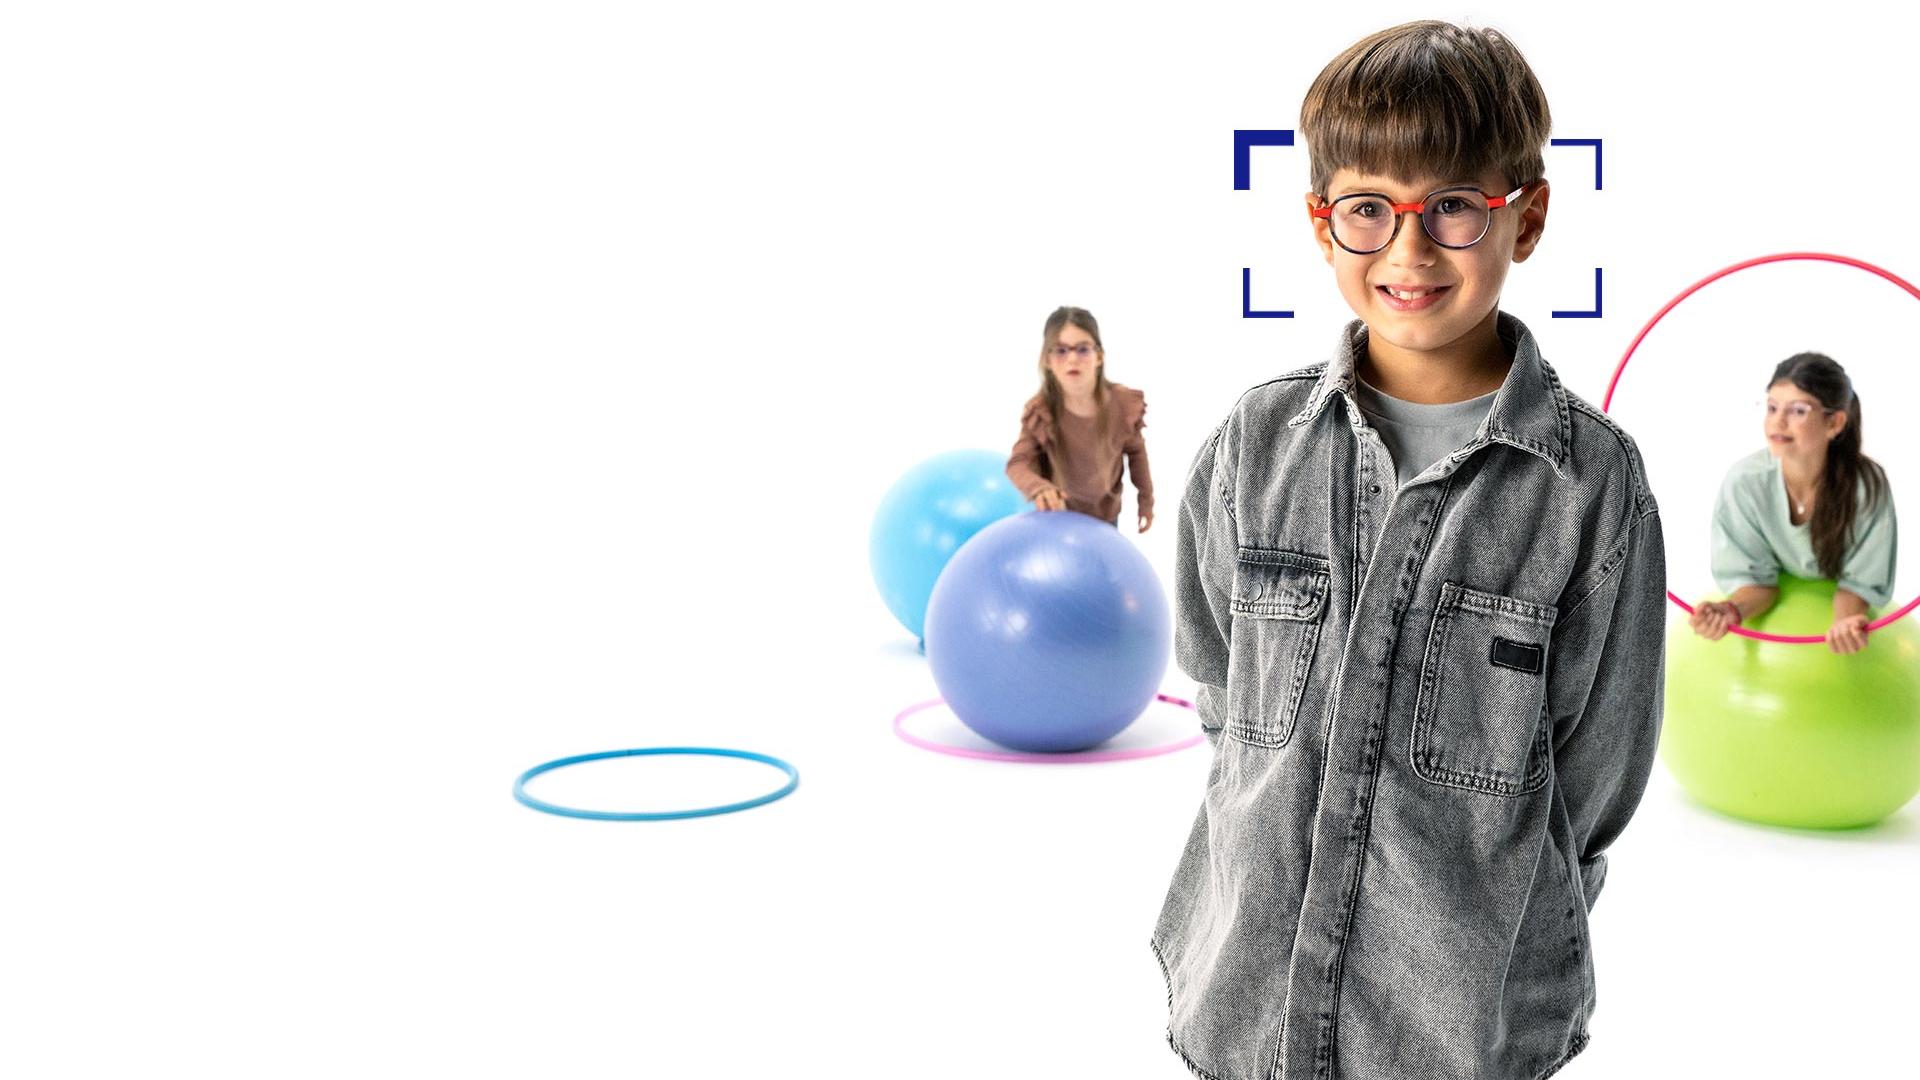 Ruskeahiuksinen poika silmillään ZEISS MyoCare -linssit seisoo etualalla ja hymyilee kameralle. Taustalla kaksi tyttöä päässään ZEISS MyoCare -linssit leikkivät vanteilla ja jumppapalloilla.